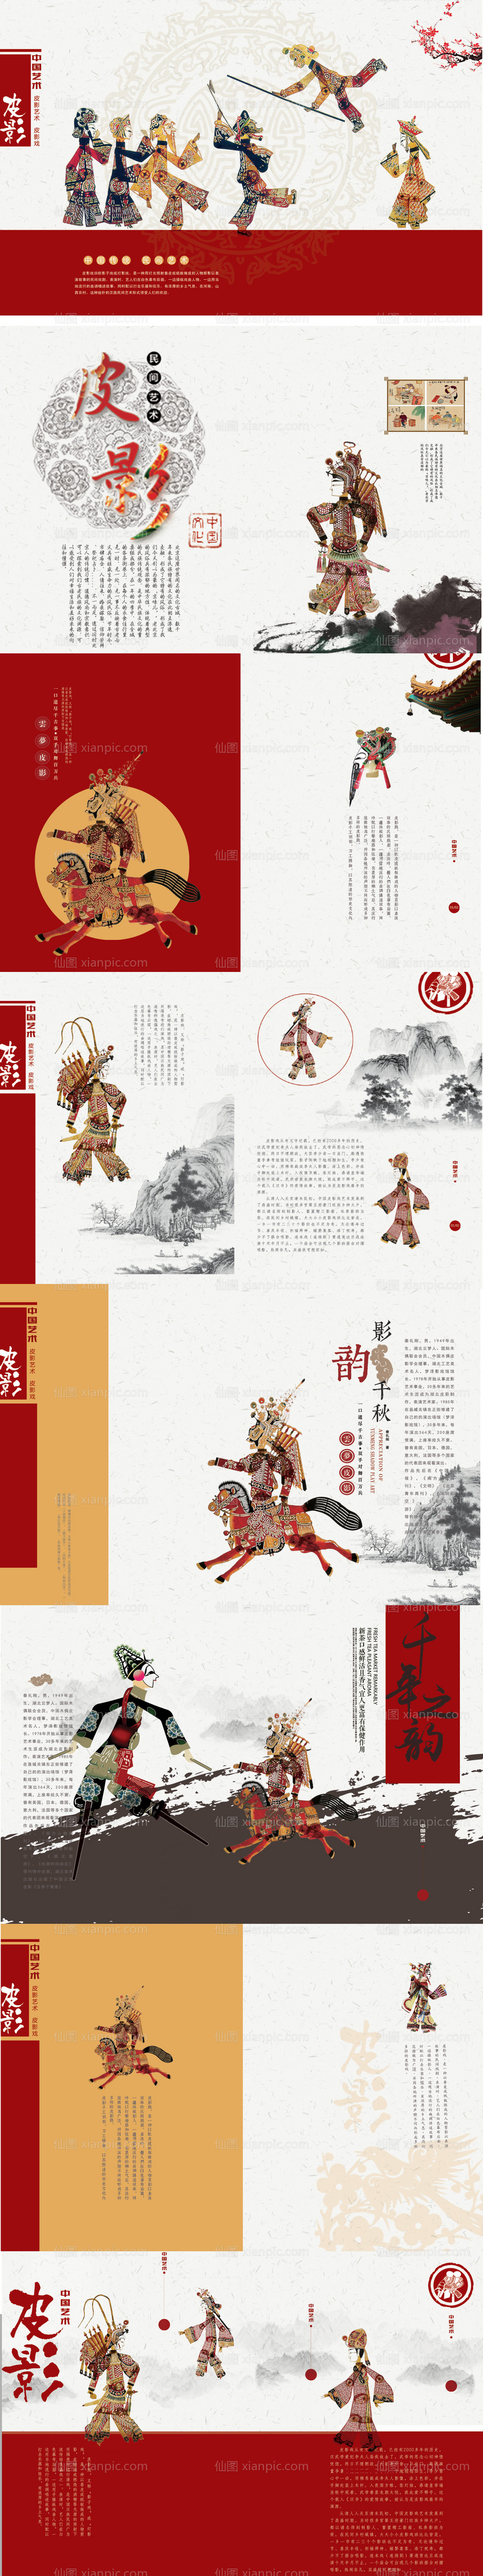 素材乐-中国传统皮影画册海报